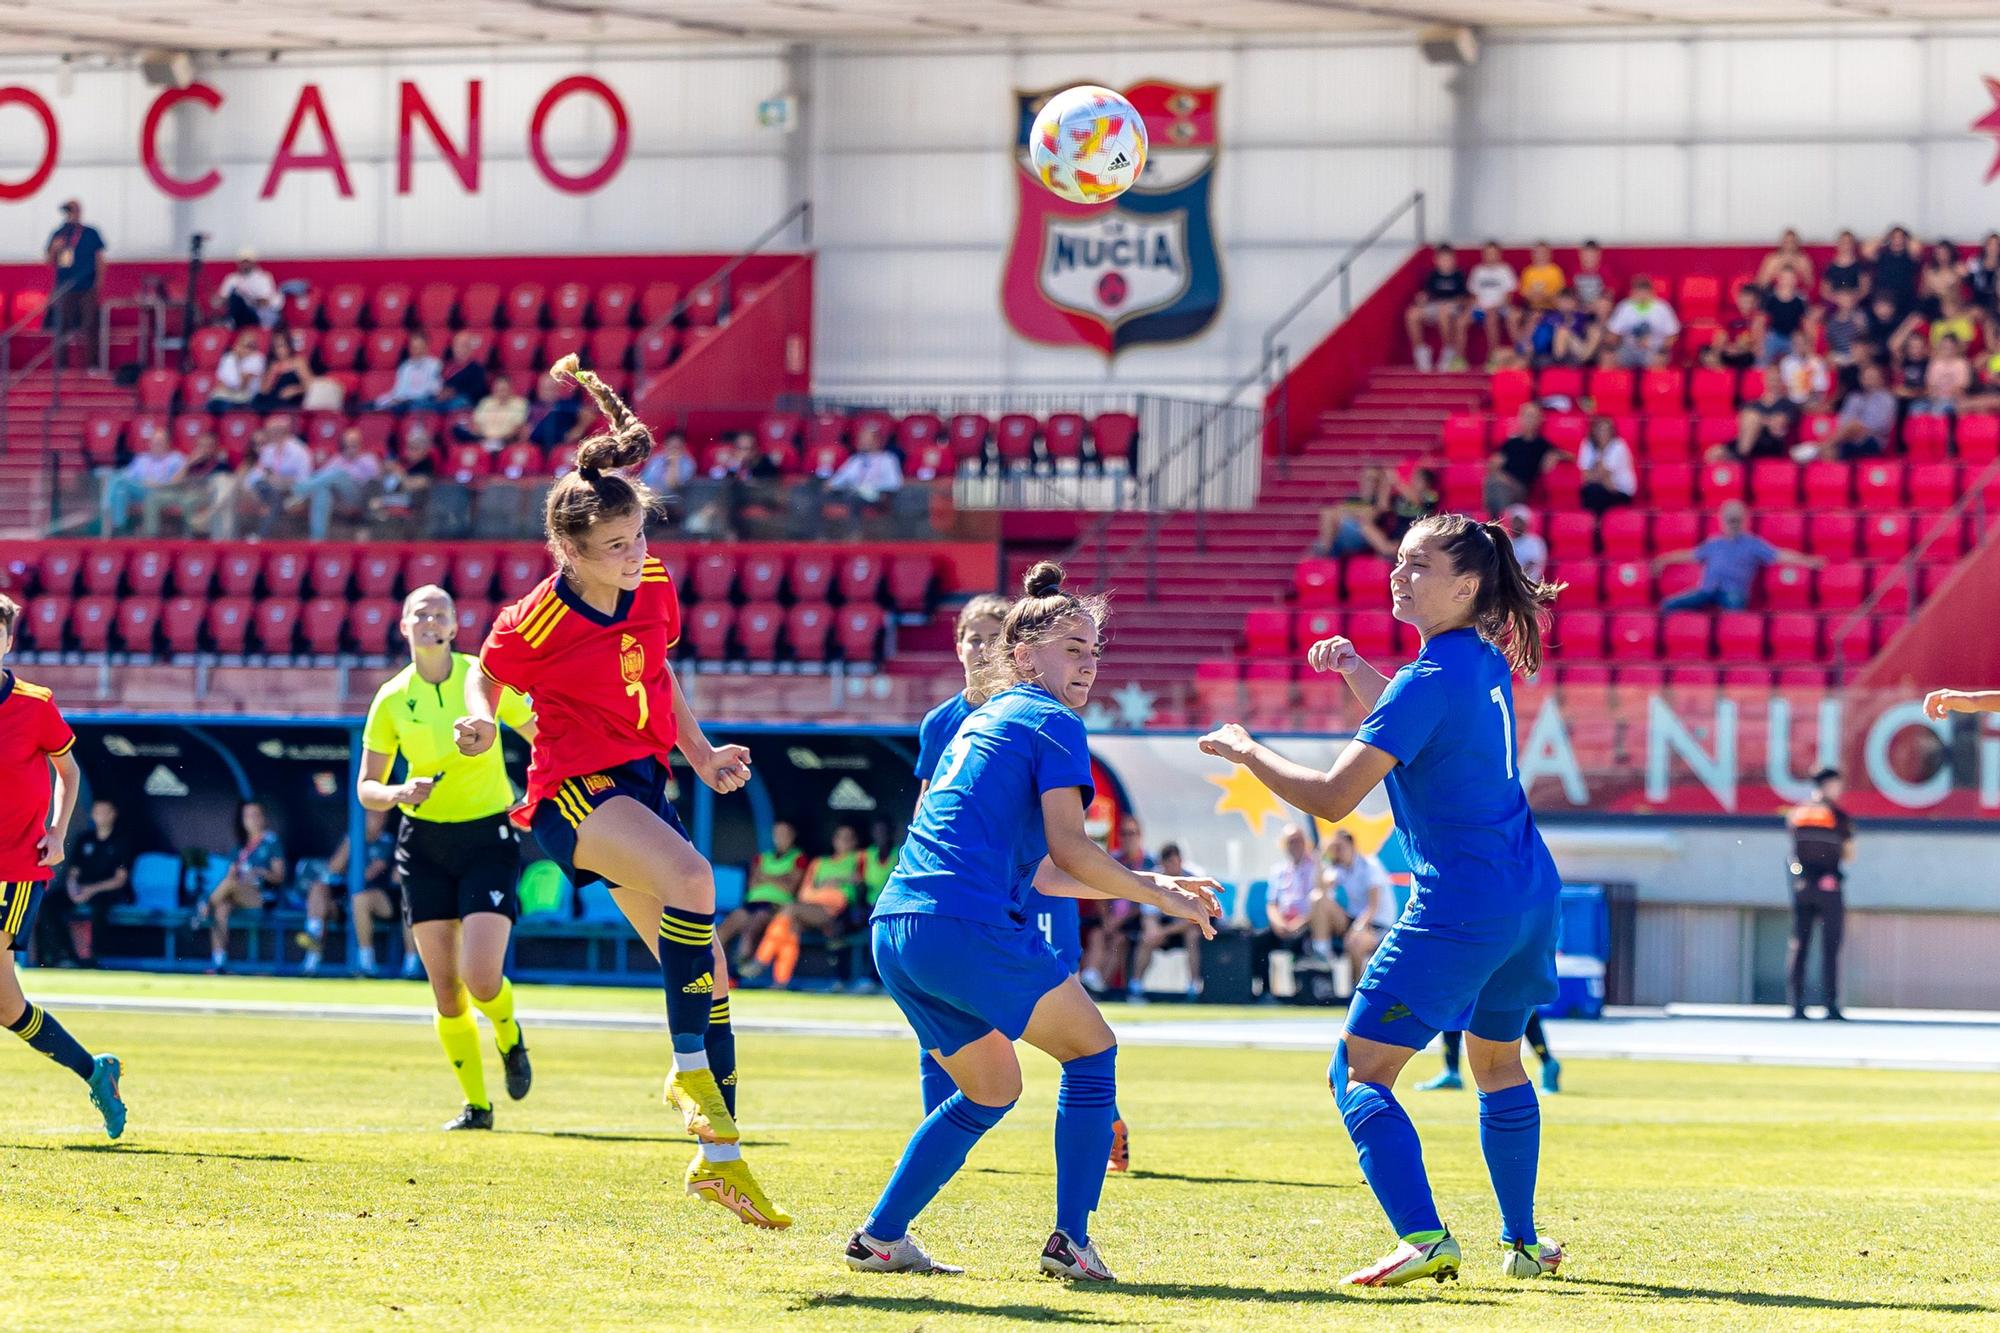 España sub 17 golea a Grecia en La Nucía. Torneo UEFA clasificatorio Eurocopa 2023